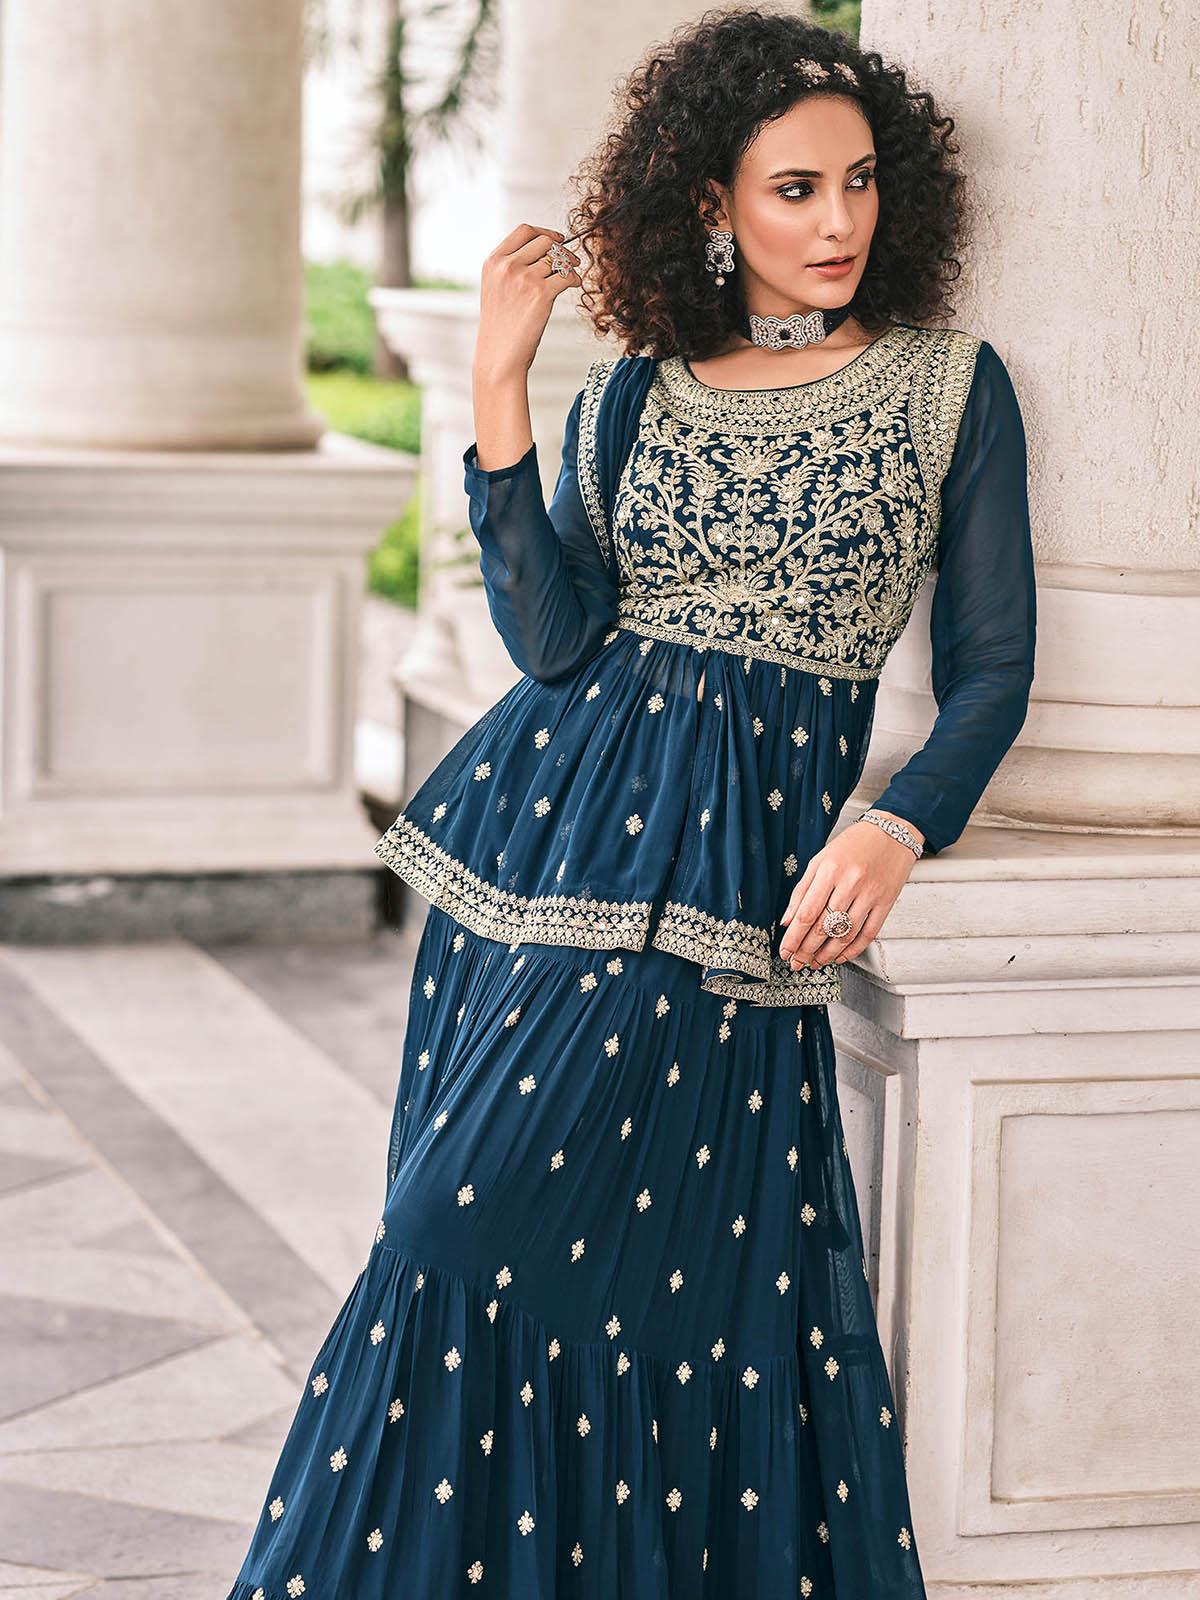 Women's Teal Blue Color Viscose Georgette Designer Sharara Suit - Odette